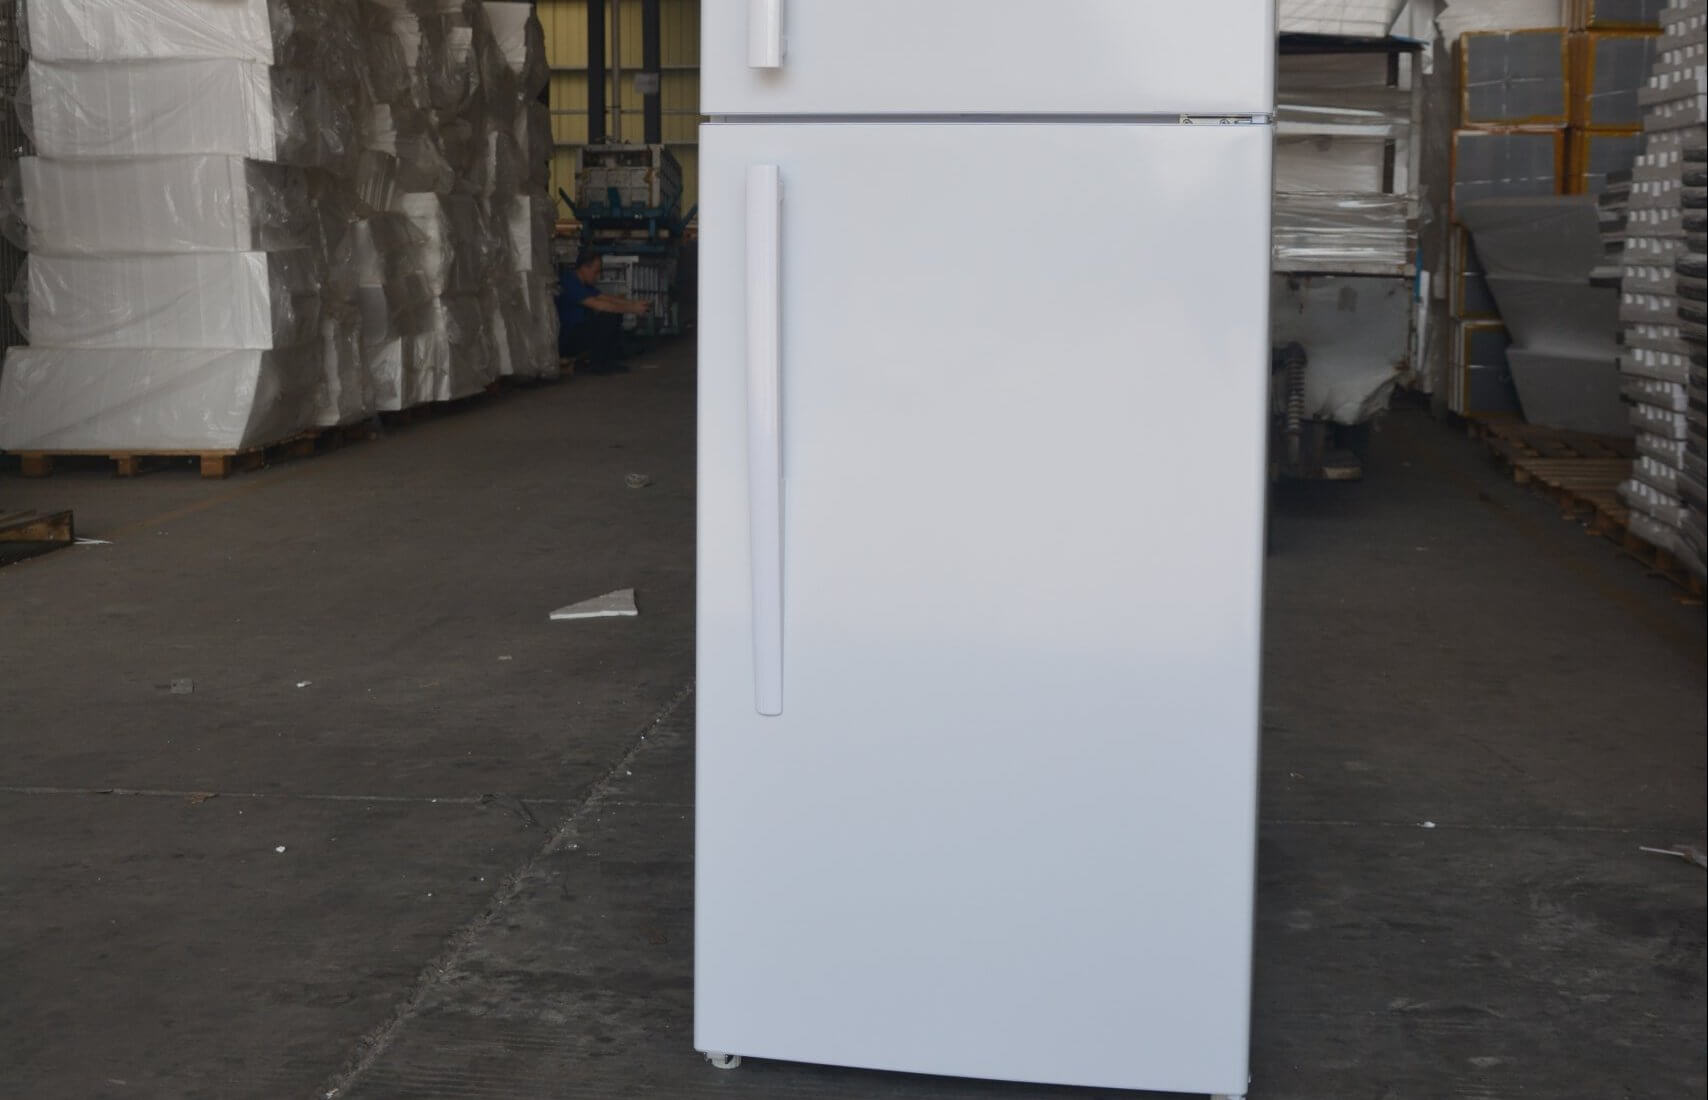 Smeta solar powered top freezer fridge TDT-225U